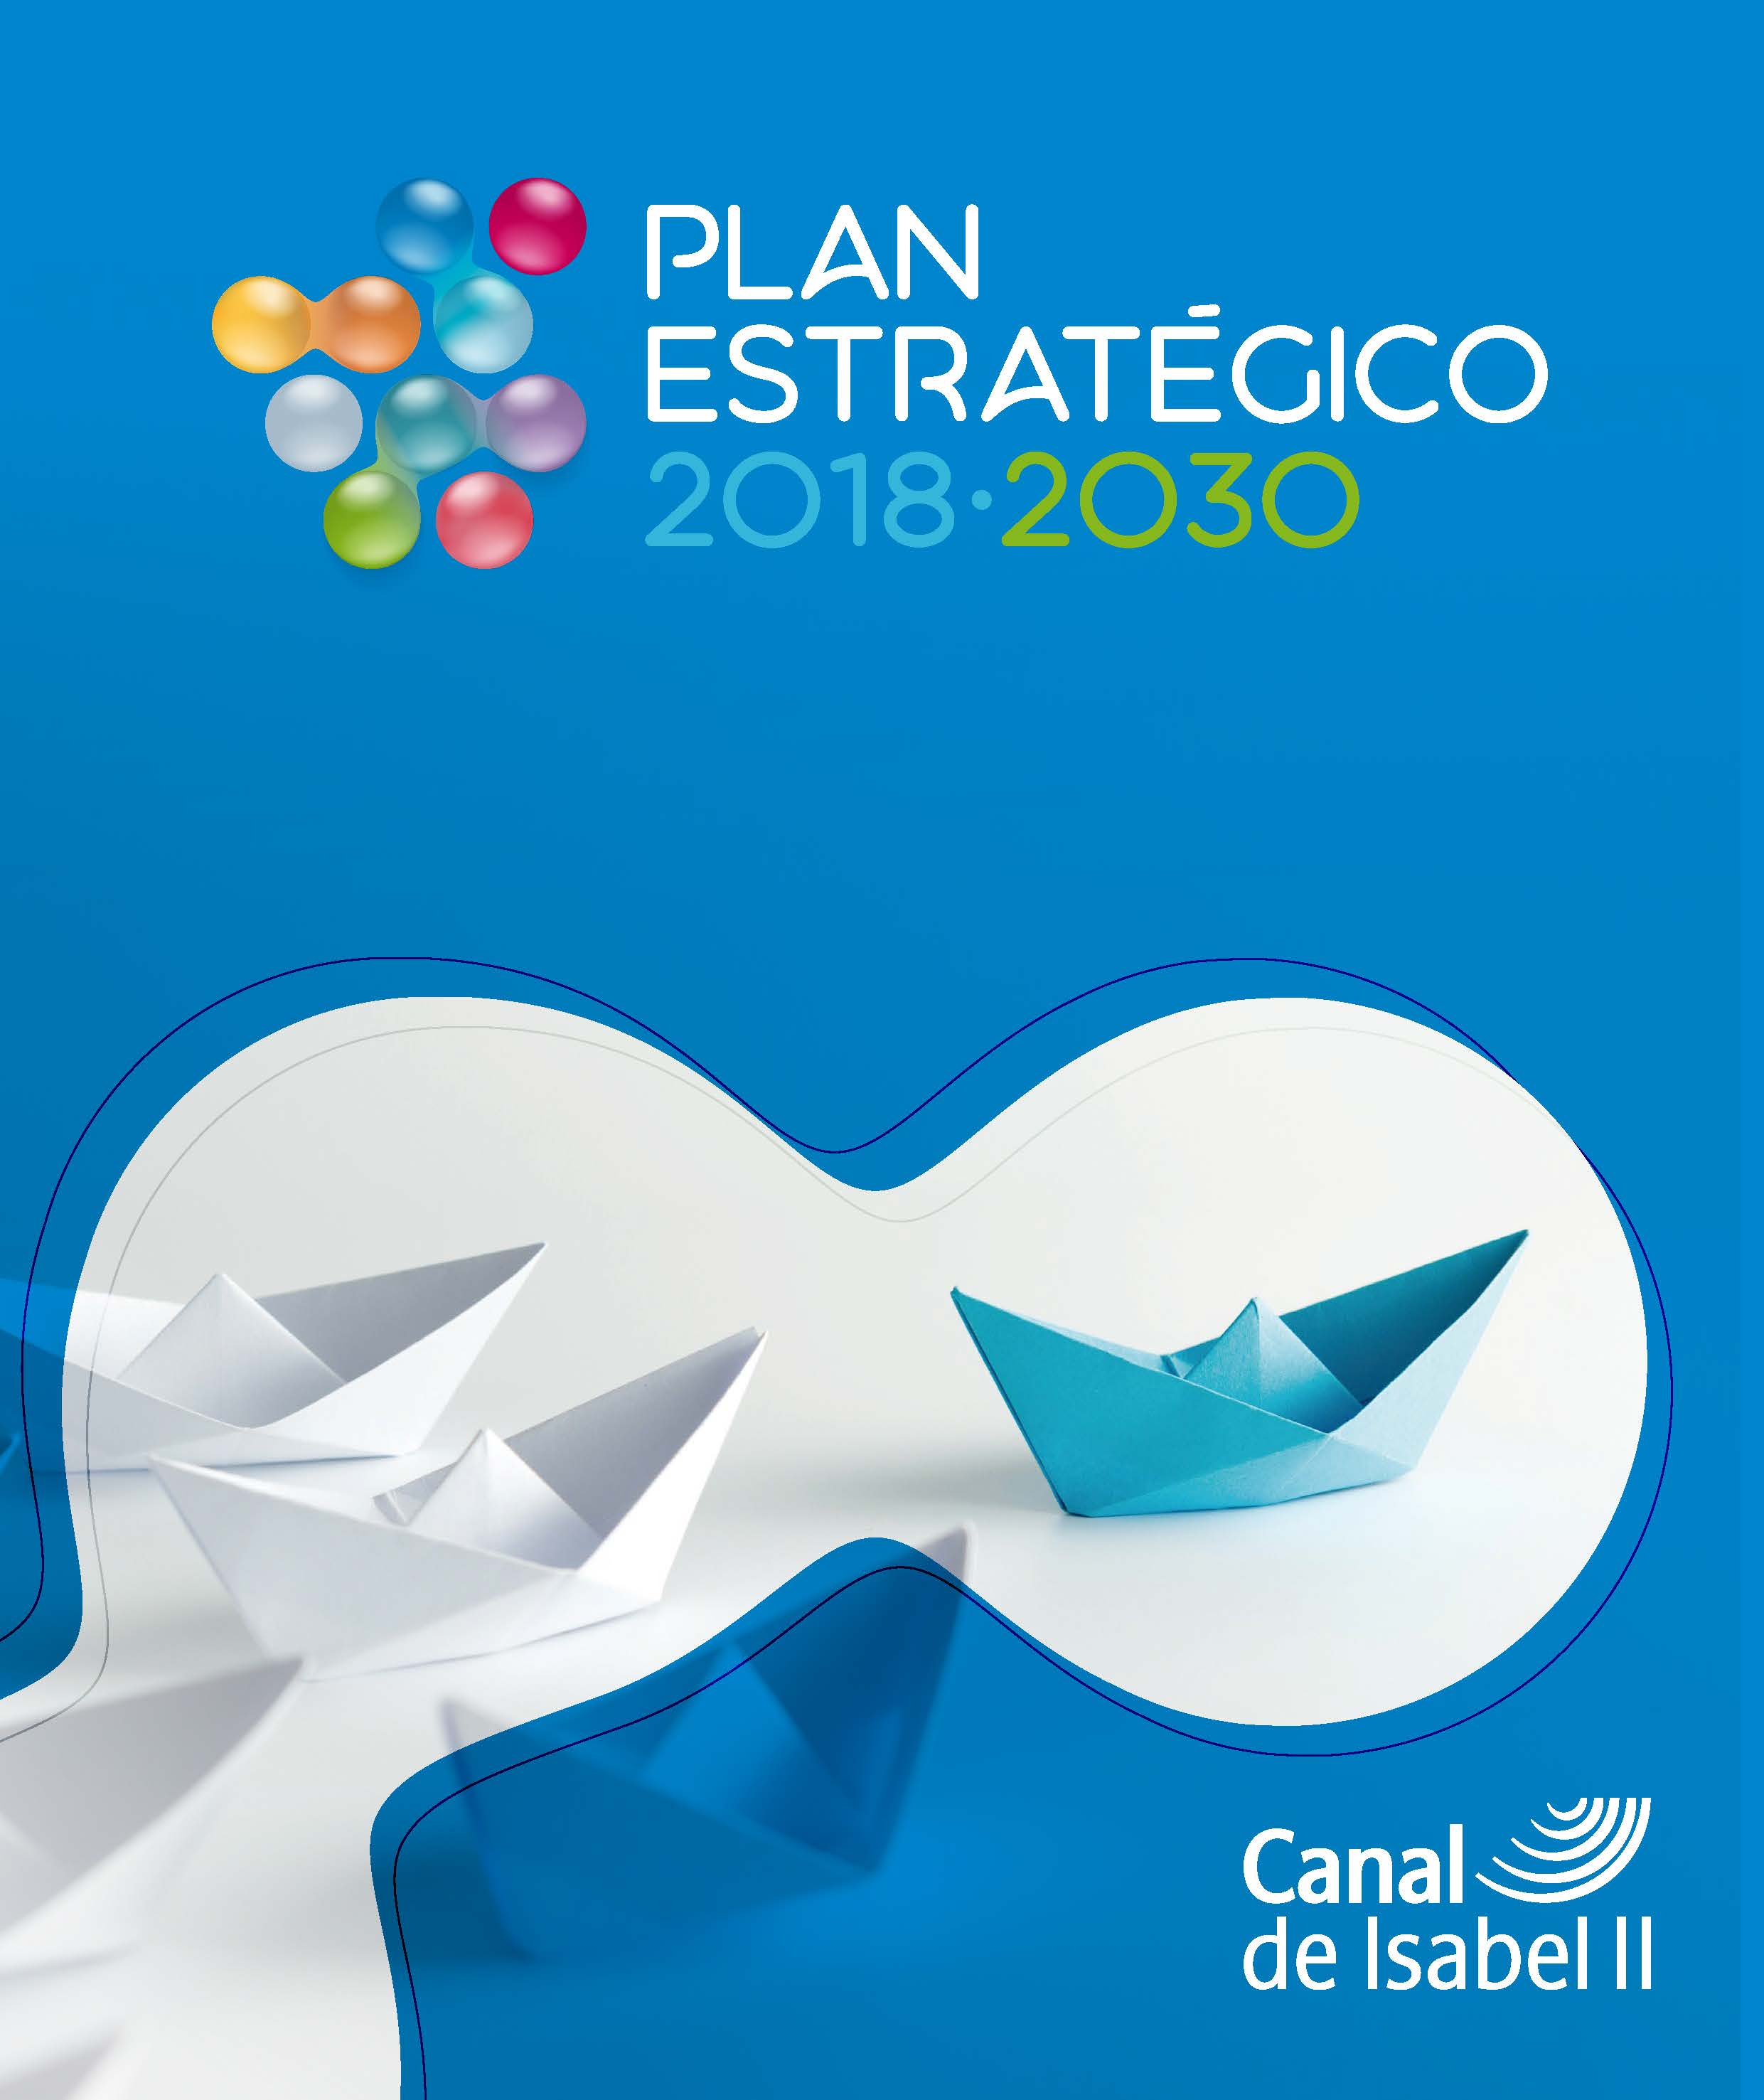 Portada de Plan Estratégico 2018-2030